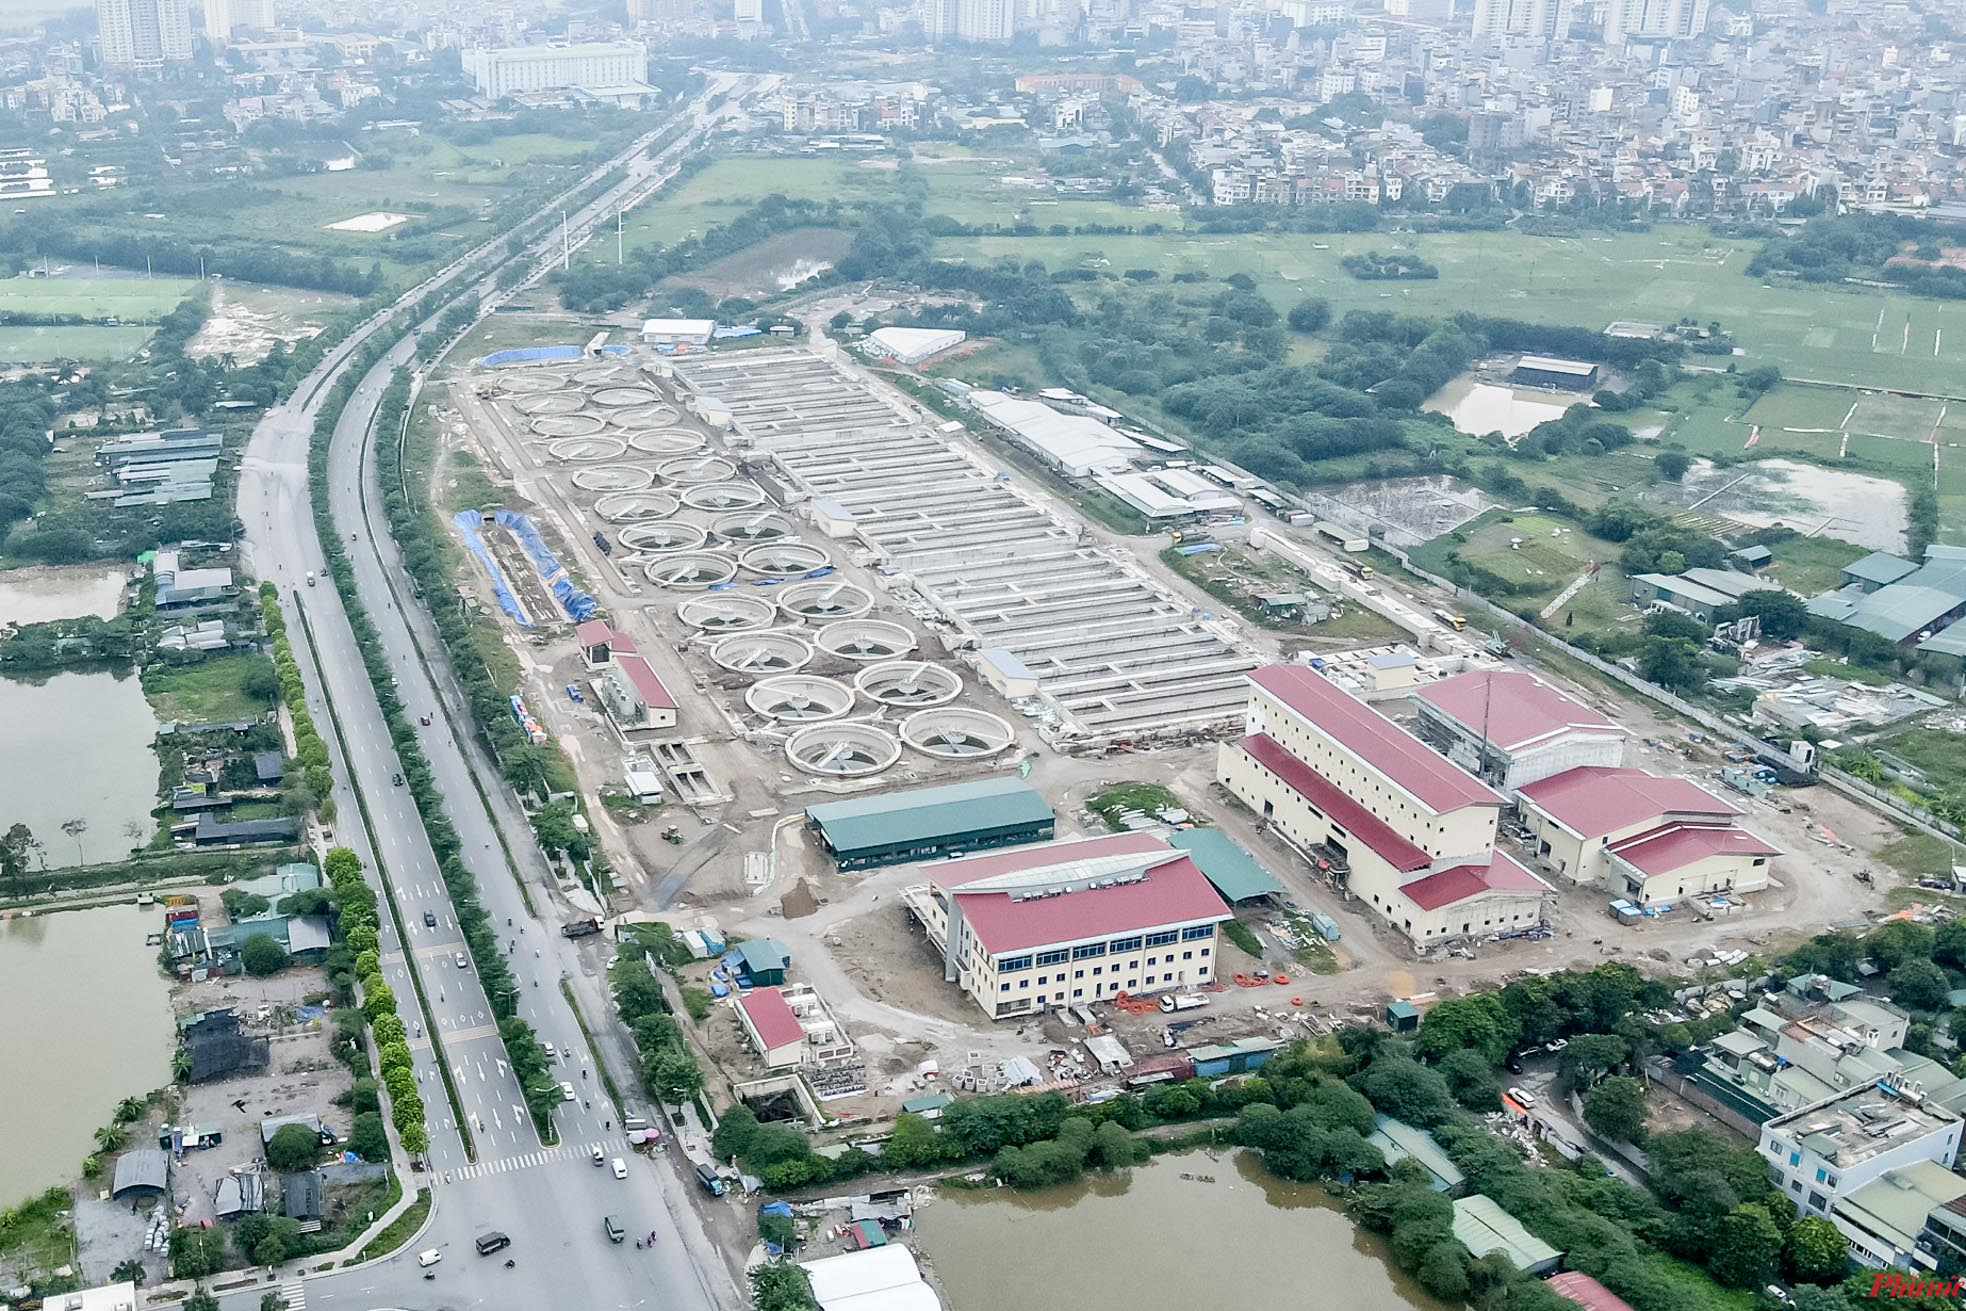 Dự án nhà máy xử lý nước thải Yên Xá có tổng diện tích 13,8 ha, nằm ở cánh đồng Yên Xá (huyện Thanh Trì, Hà Nội) được xem là một trong những dự án quy mô lớn nhất và mang tính cấp bách của Hà Nội về xử lý nước thải.